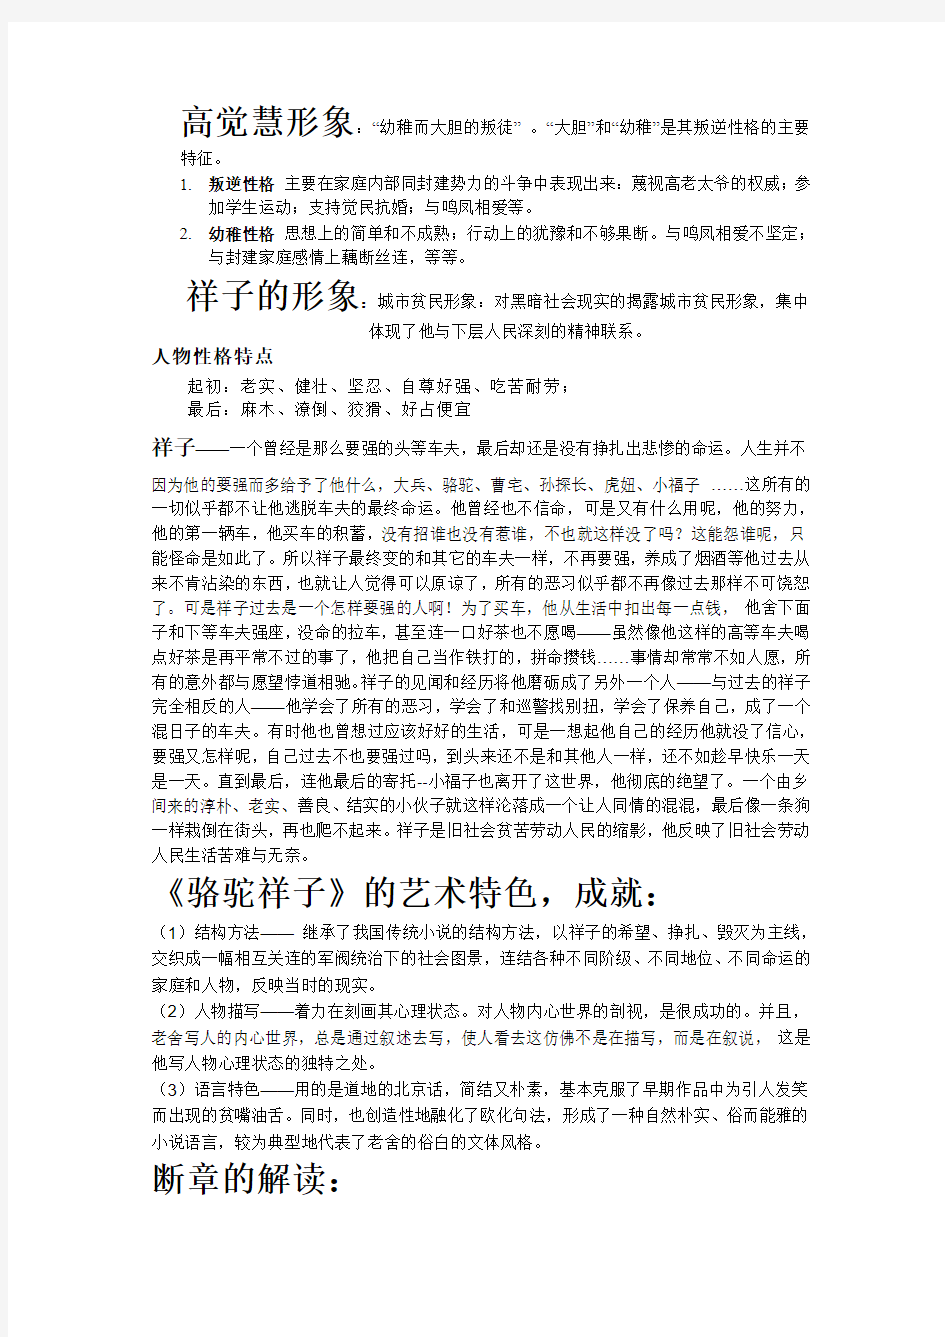 大一中国现代文学史考试复习笔记2